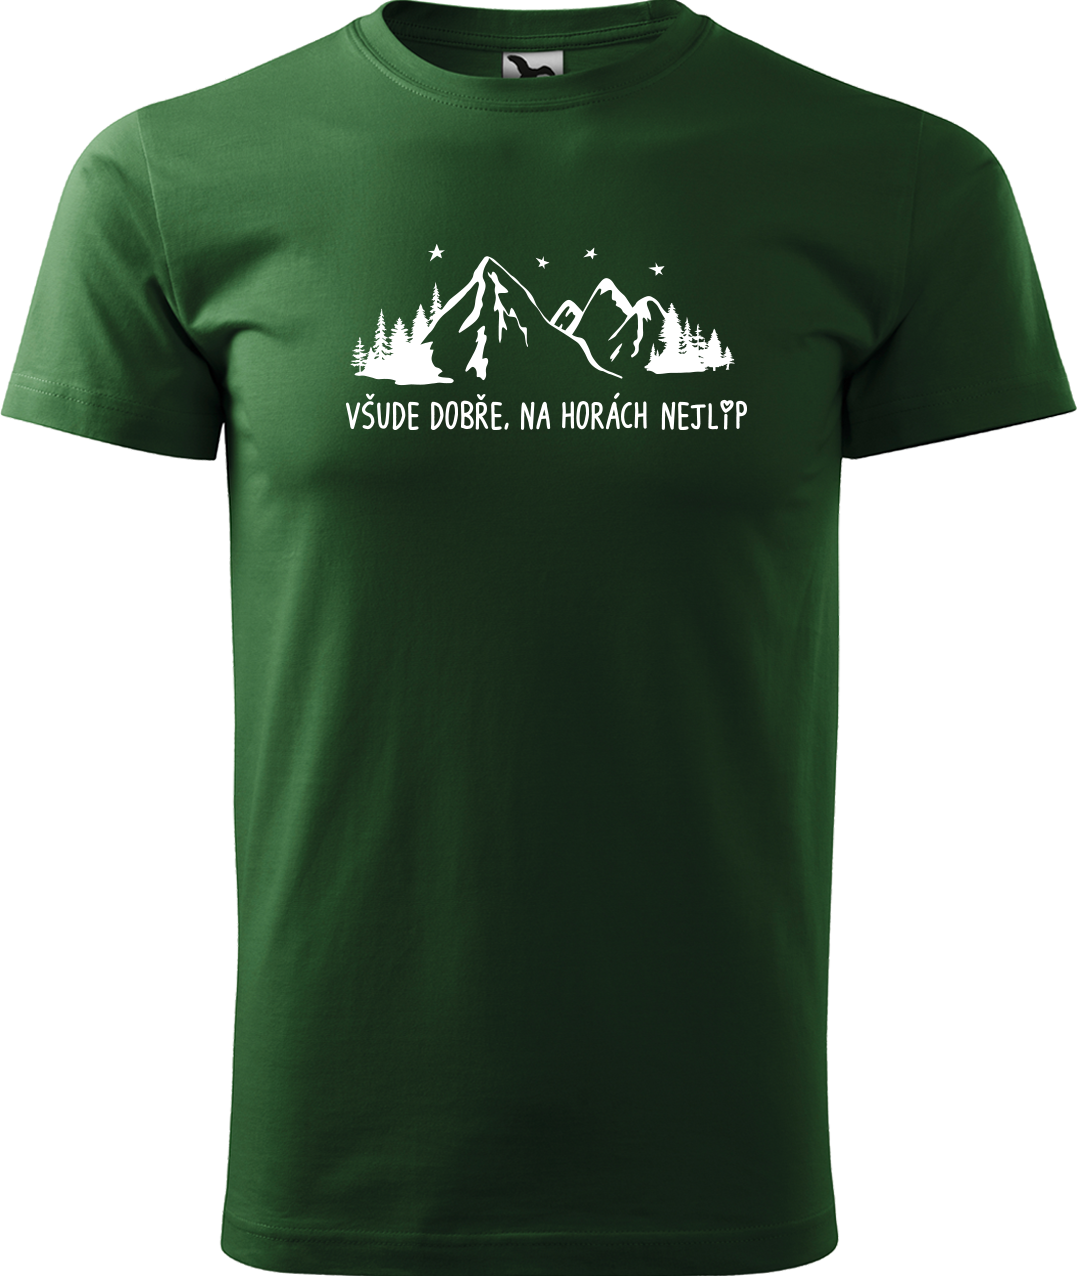 Pánské tričko na hory - Všude dobře, na horách nejlíp Velikost: XL, Barva: Lahvově zelená (06)